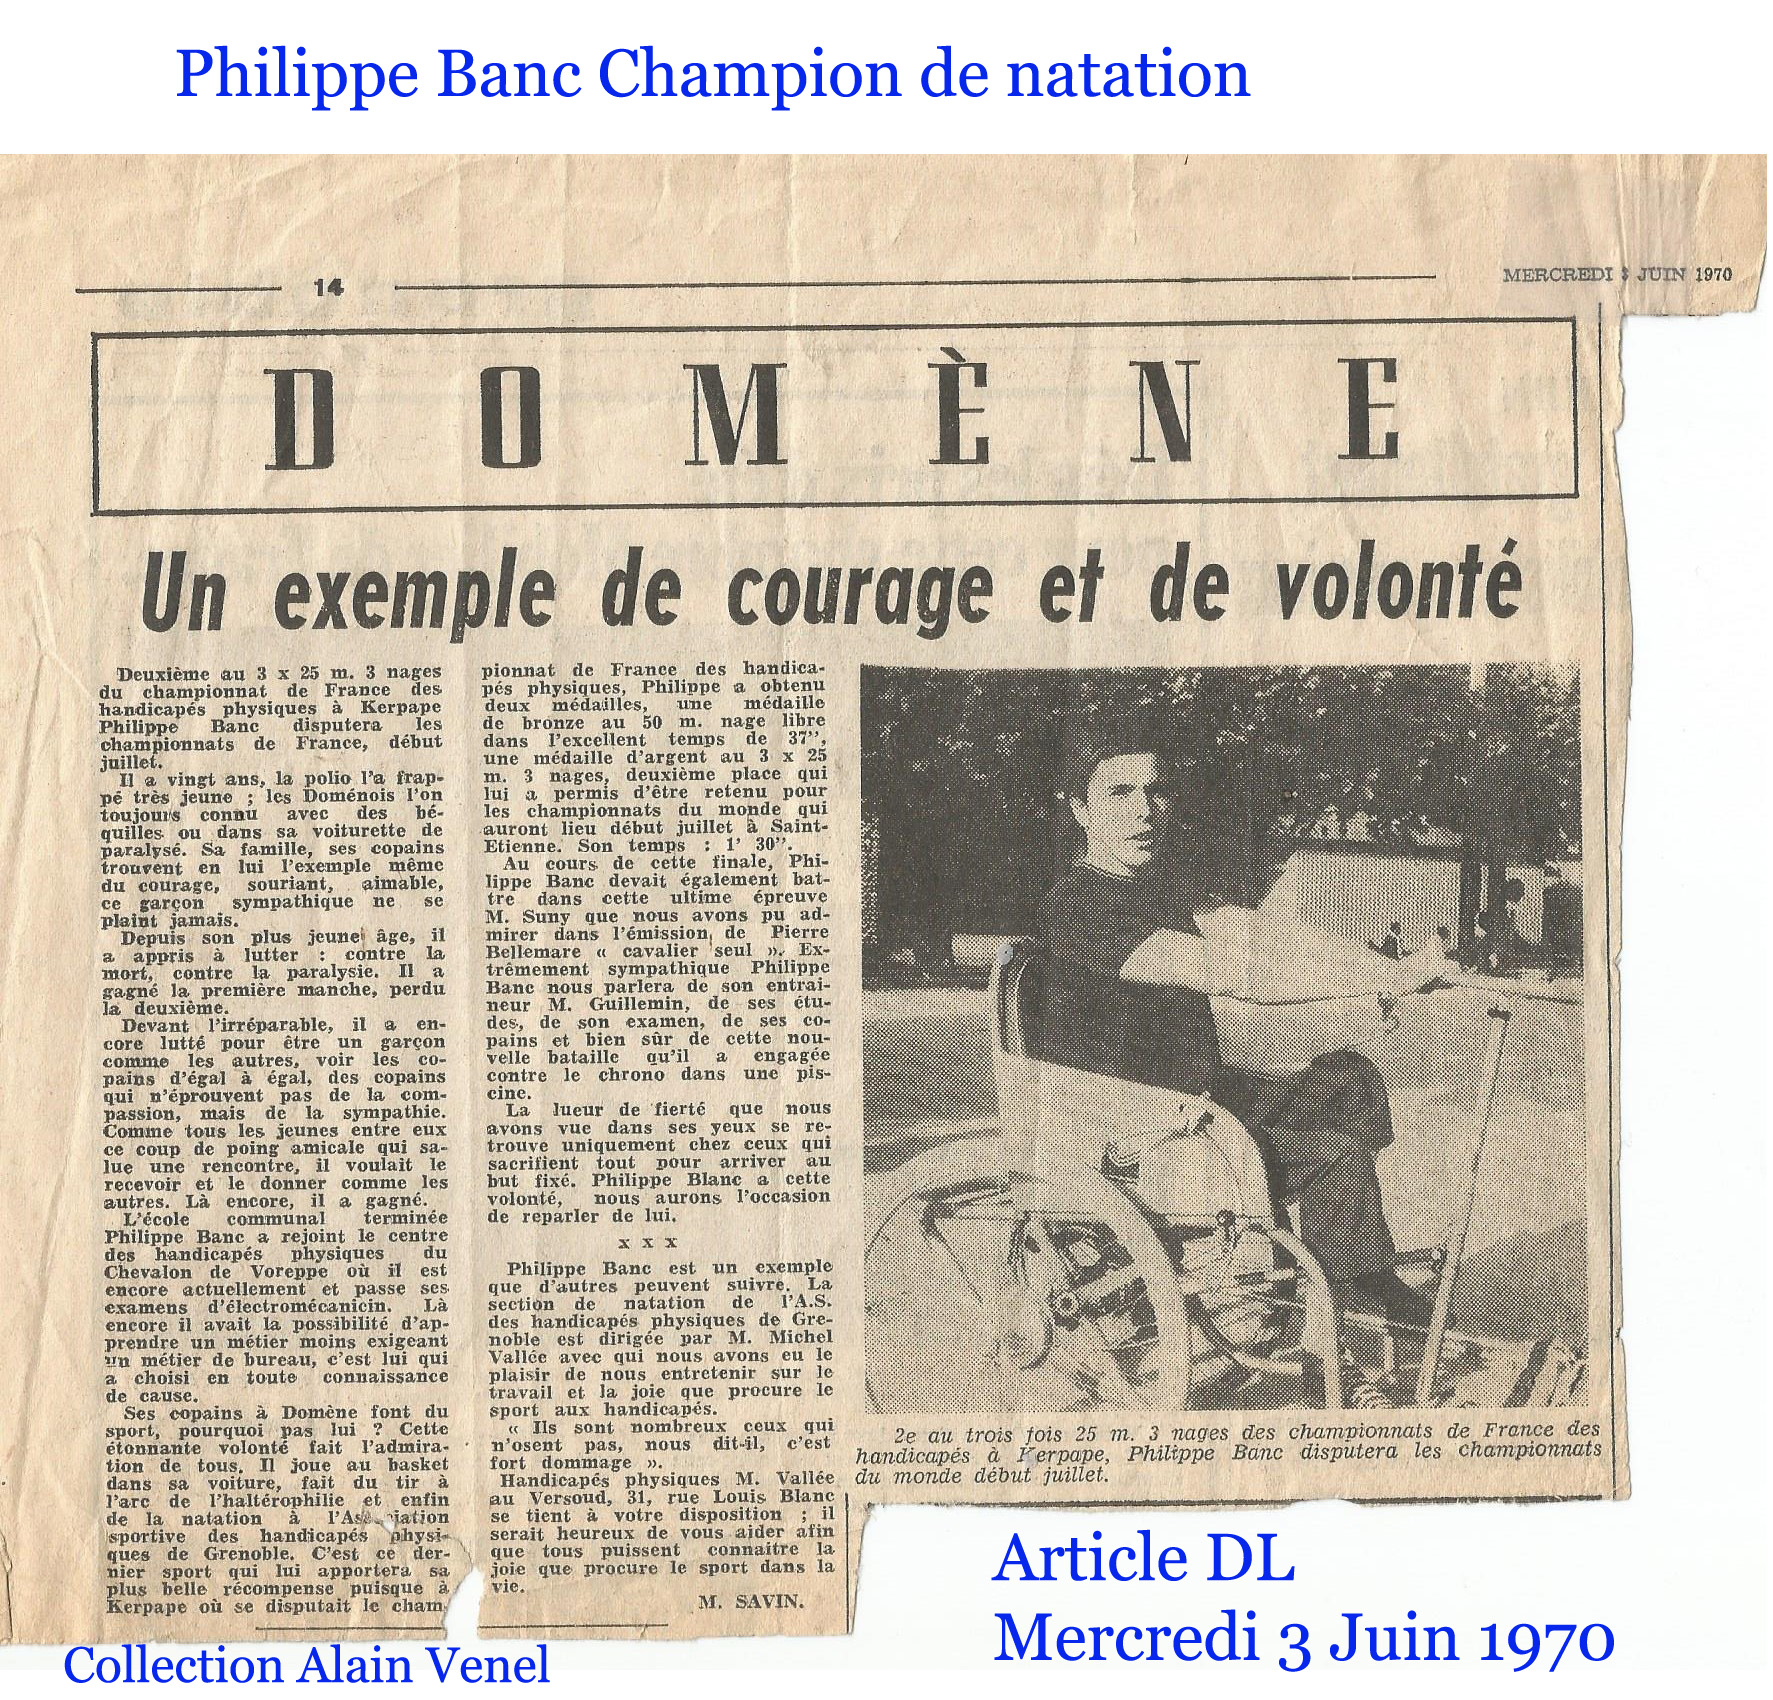 Banc philippe champion france natation juin 1970